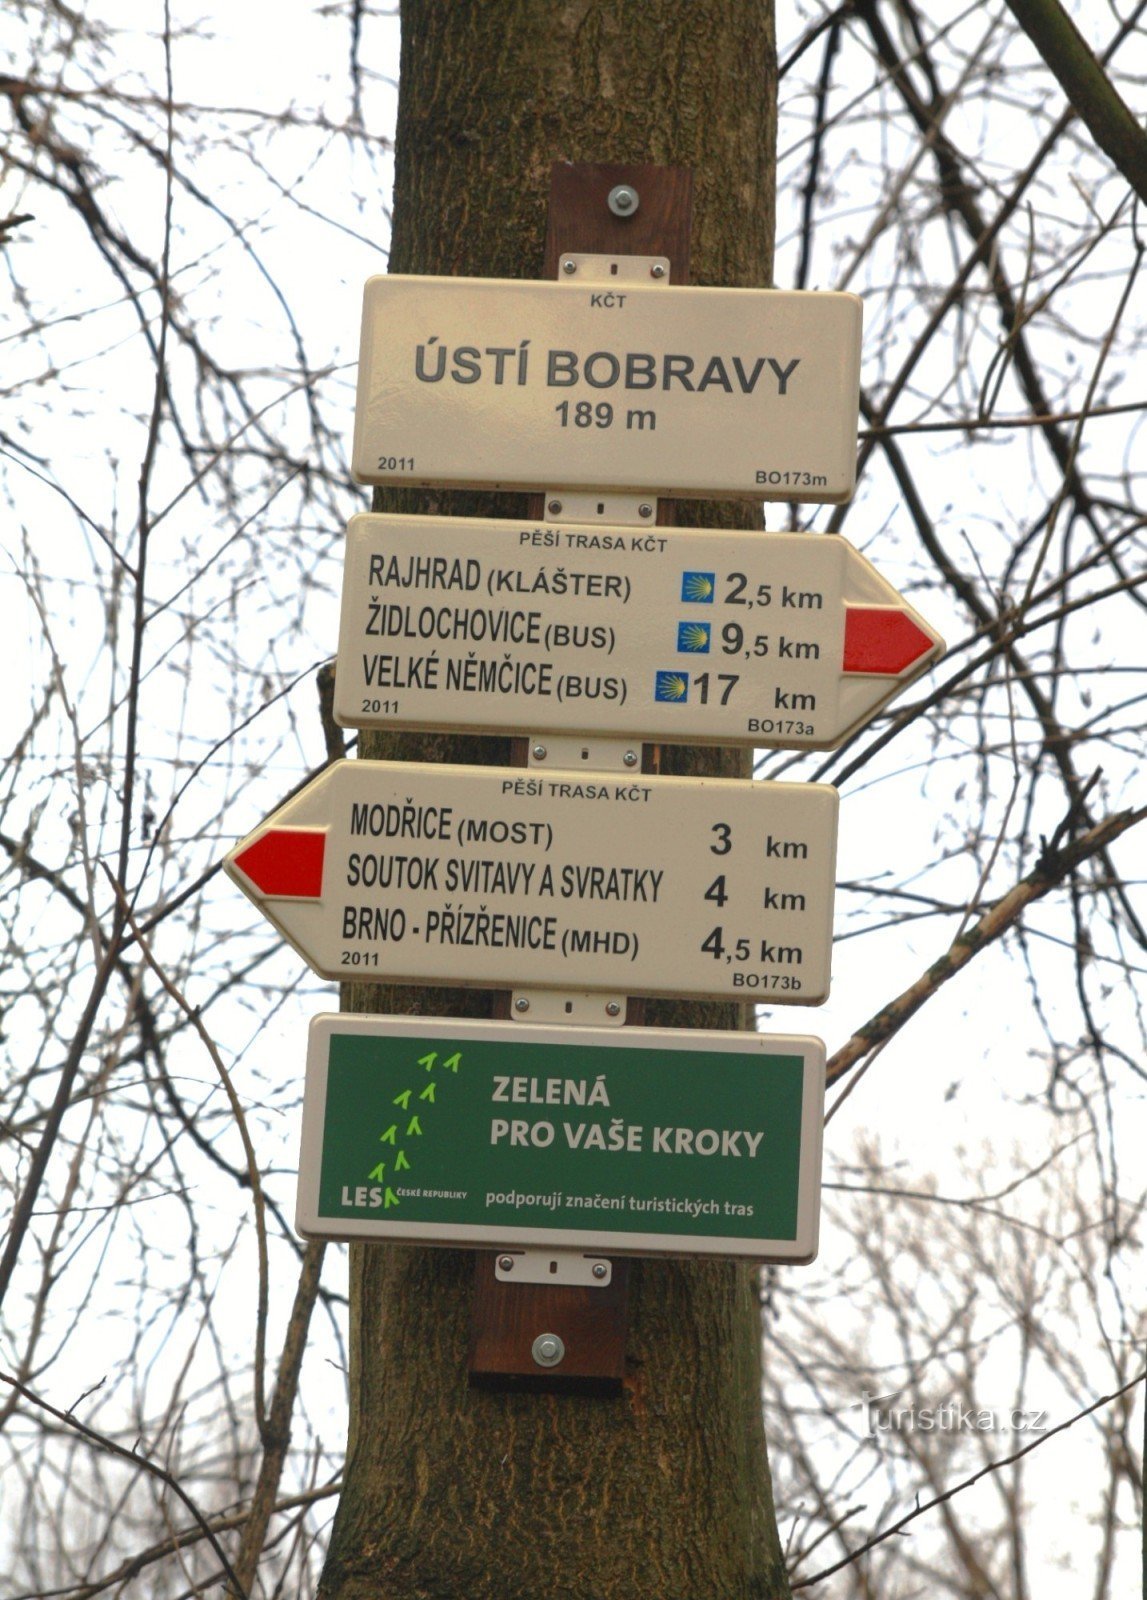 Răscruce turistică a lui Ústí Bobrava